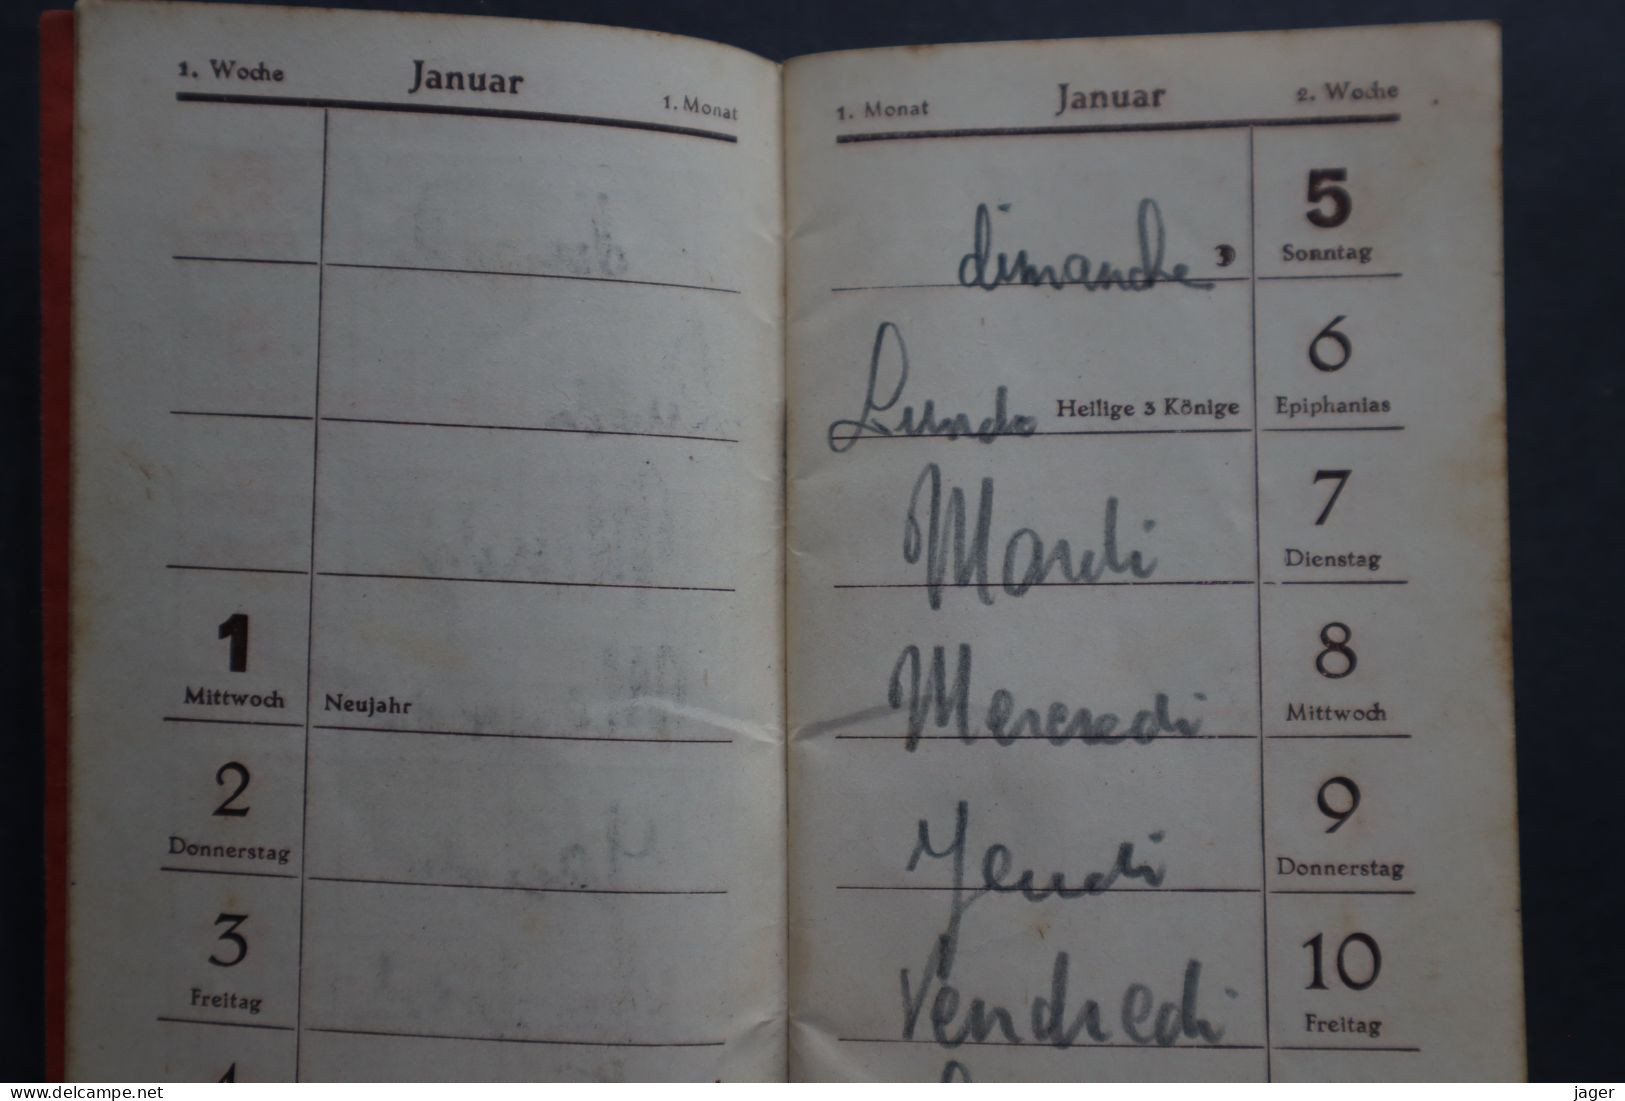 Taschen 1941 Kalender  Carnet D'un Prisonnier - 1939-45